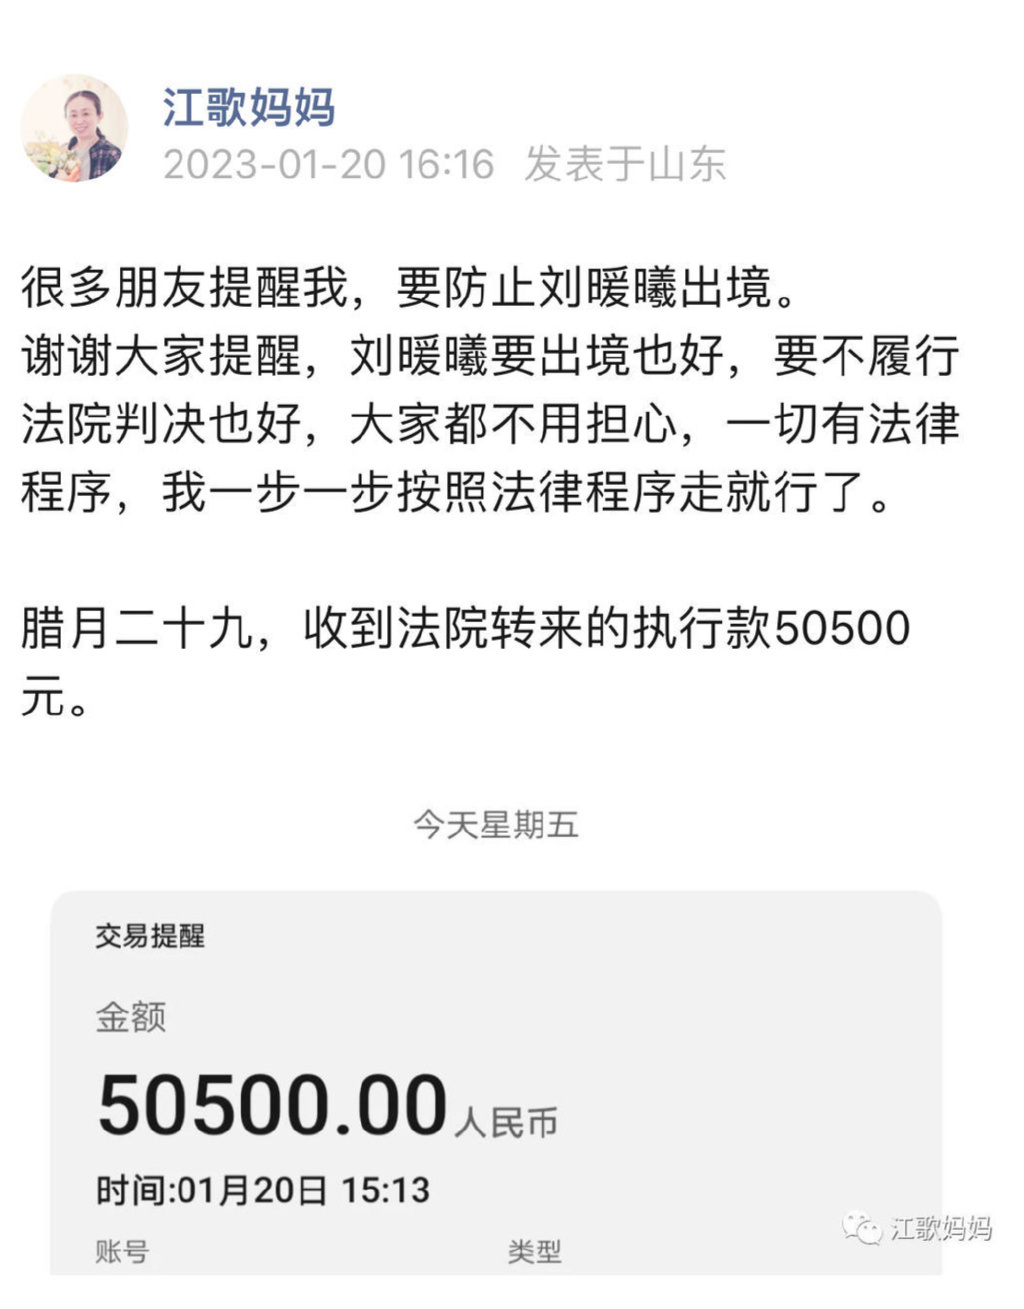 江歌妈妈收到首笔法院执行款50500元 剩余赔偿款法院未谈及需再等一下